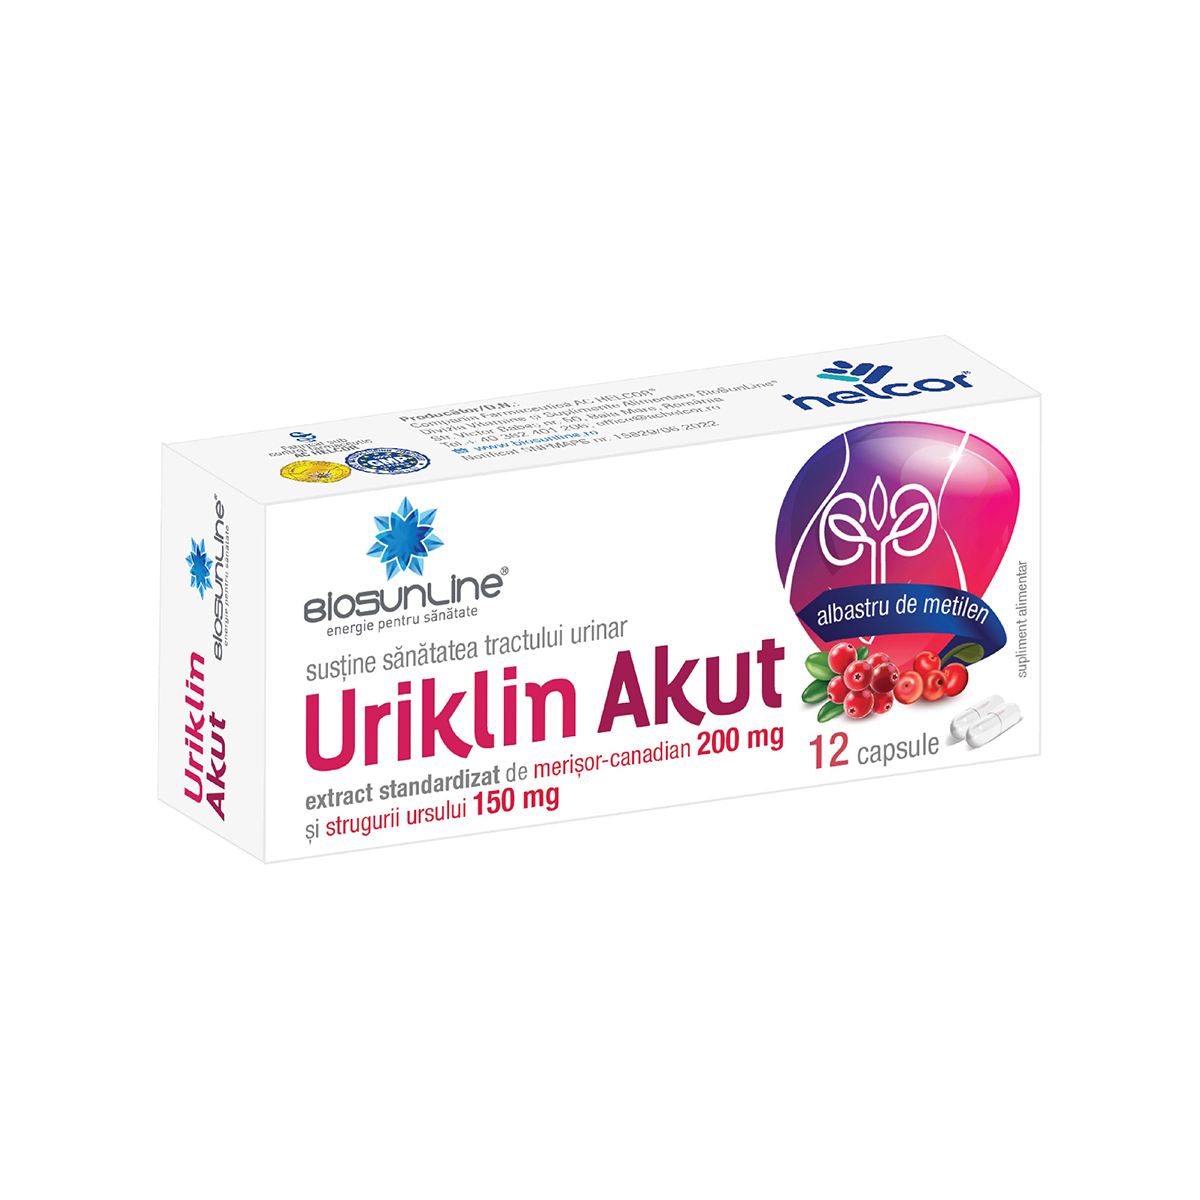 Uriklin Akut cu albastru de metilen, 12 capsule, Biosunline